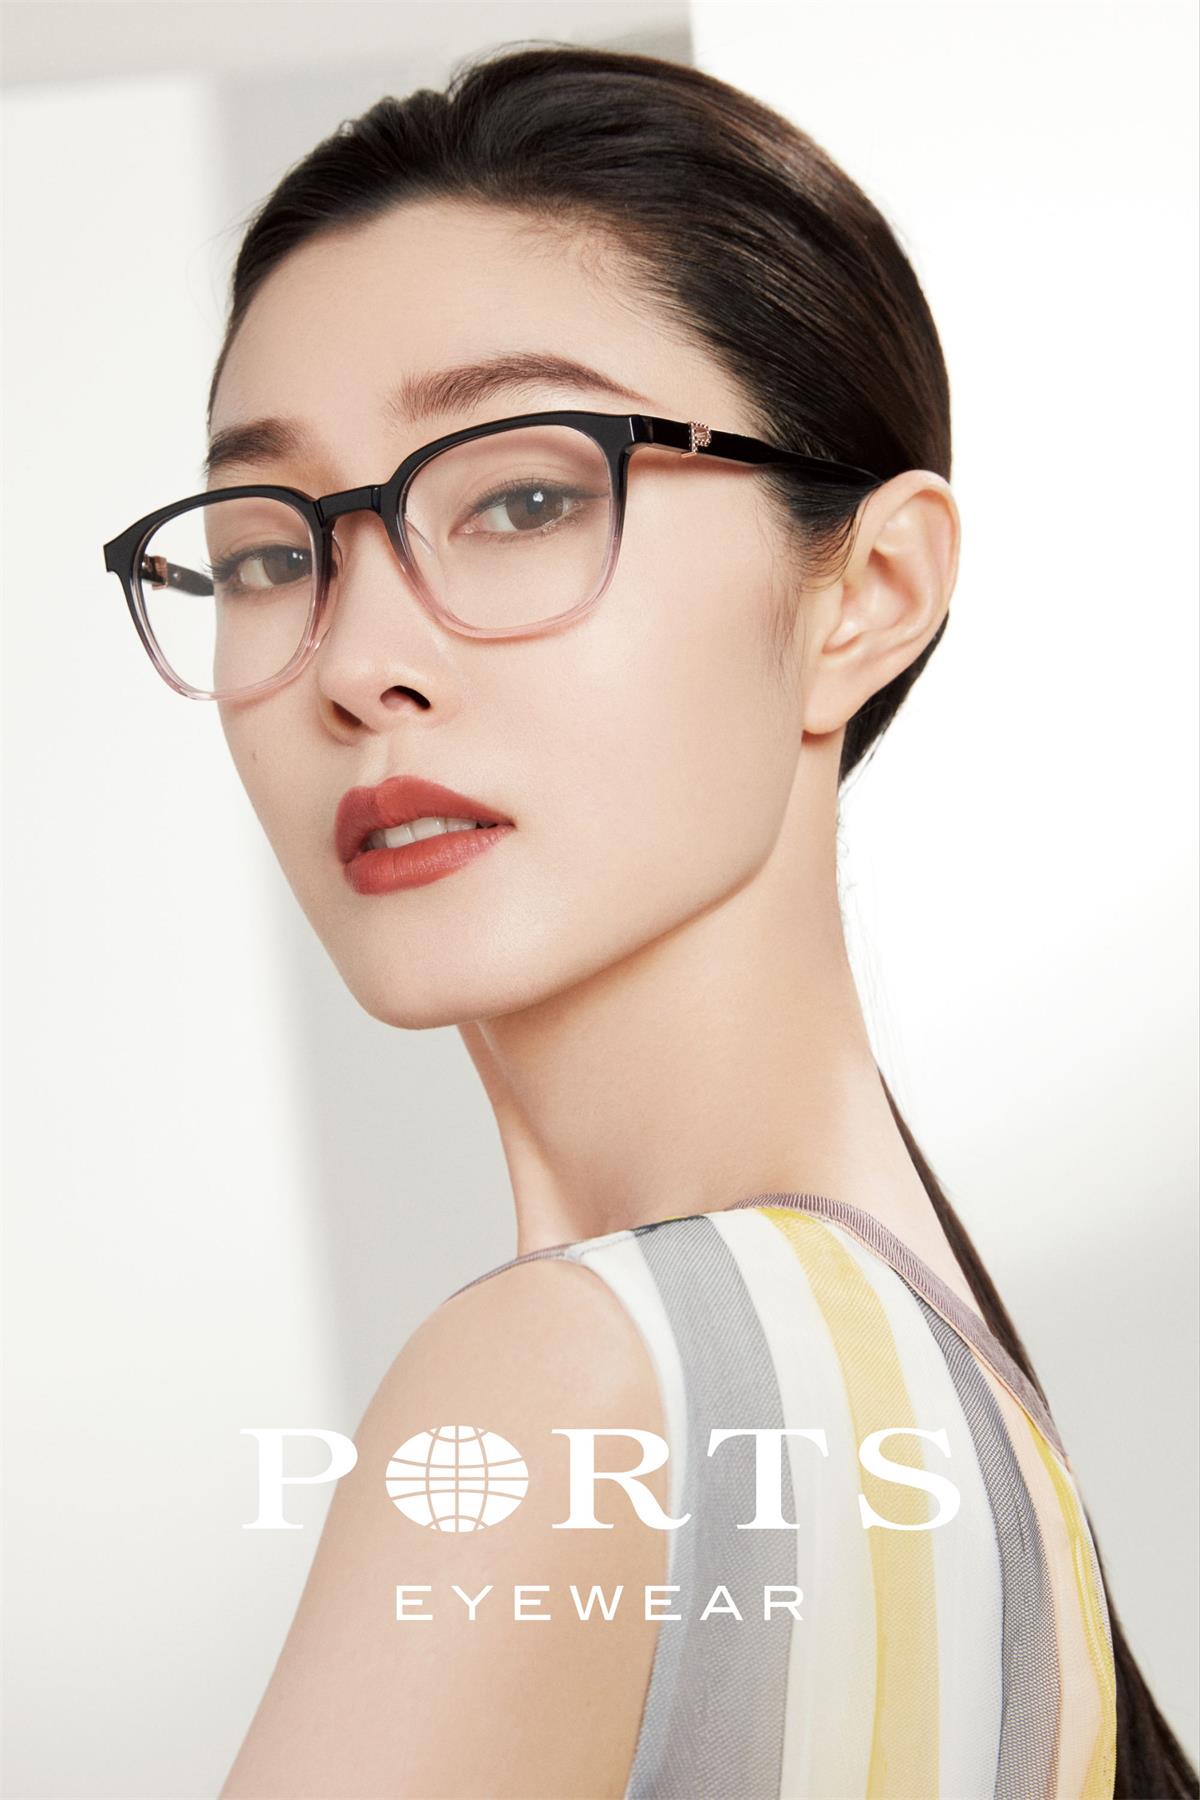 忠于自我 寻回本初 宝姿PORTS宣布宋轶成为中国区眼镜品牌大使